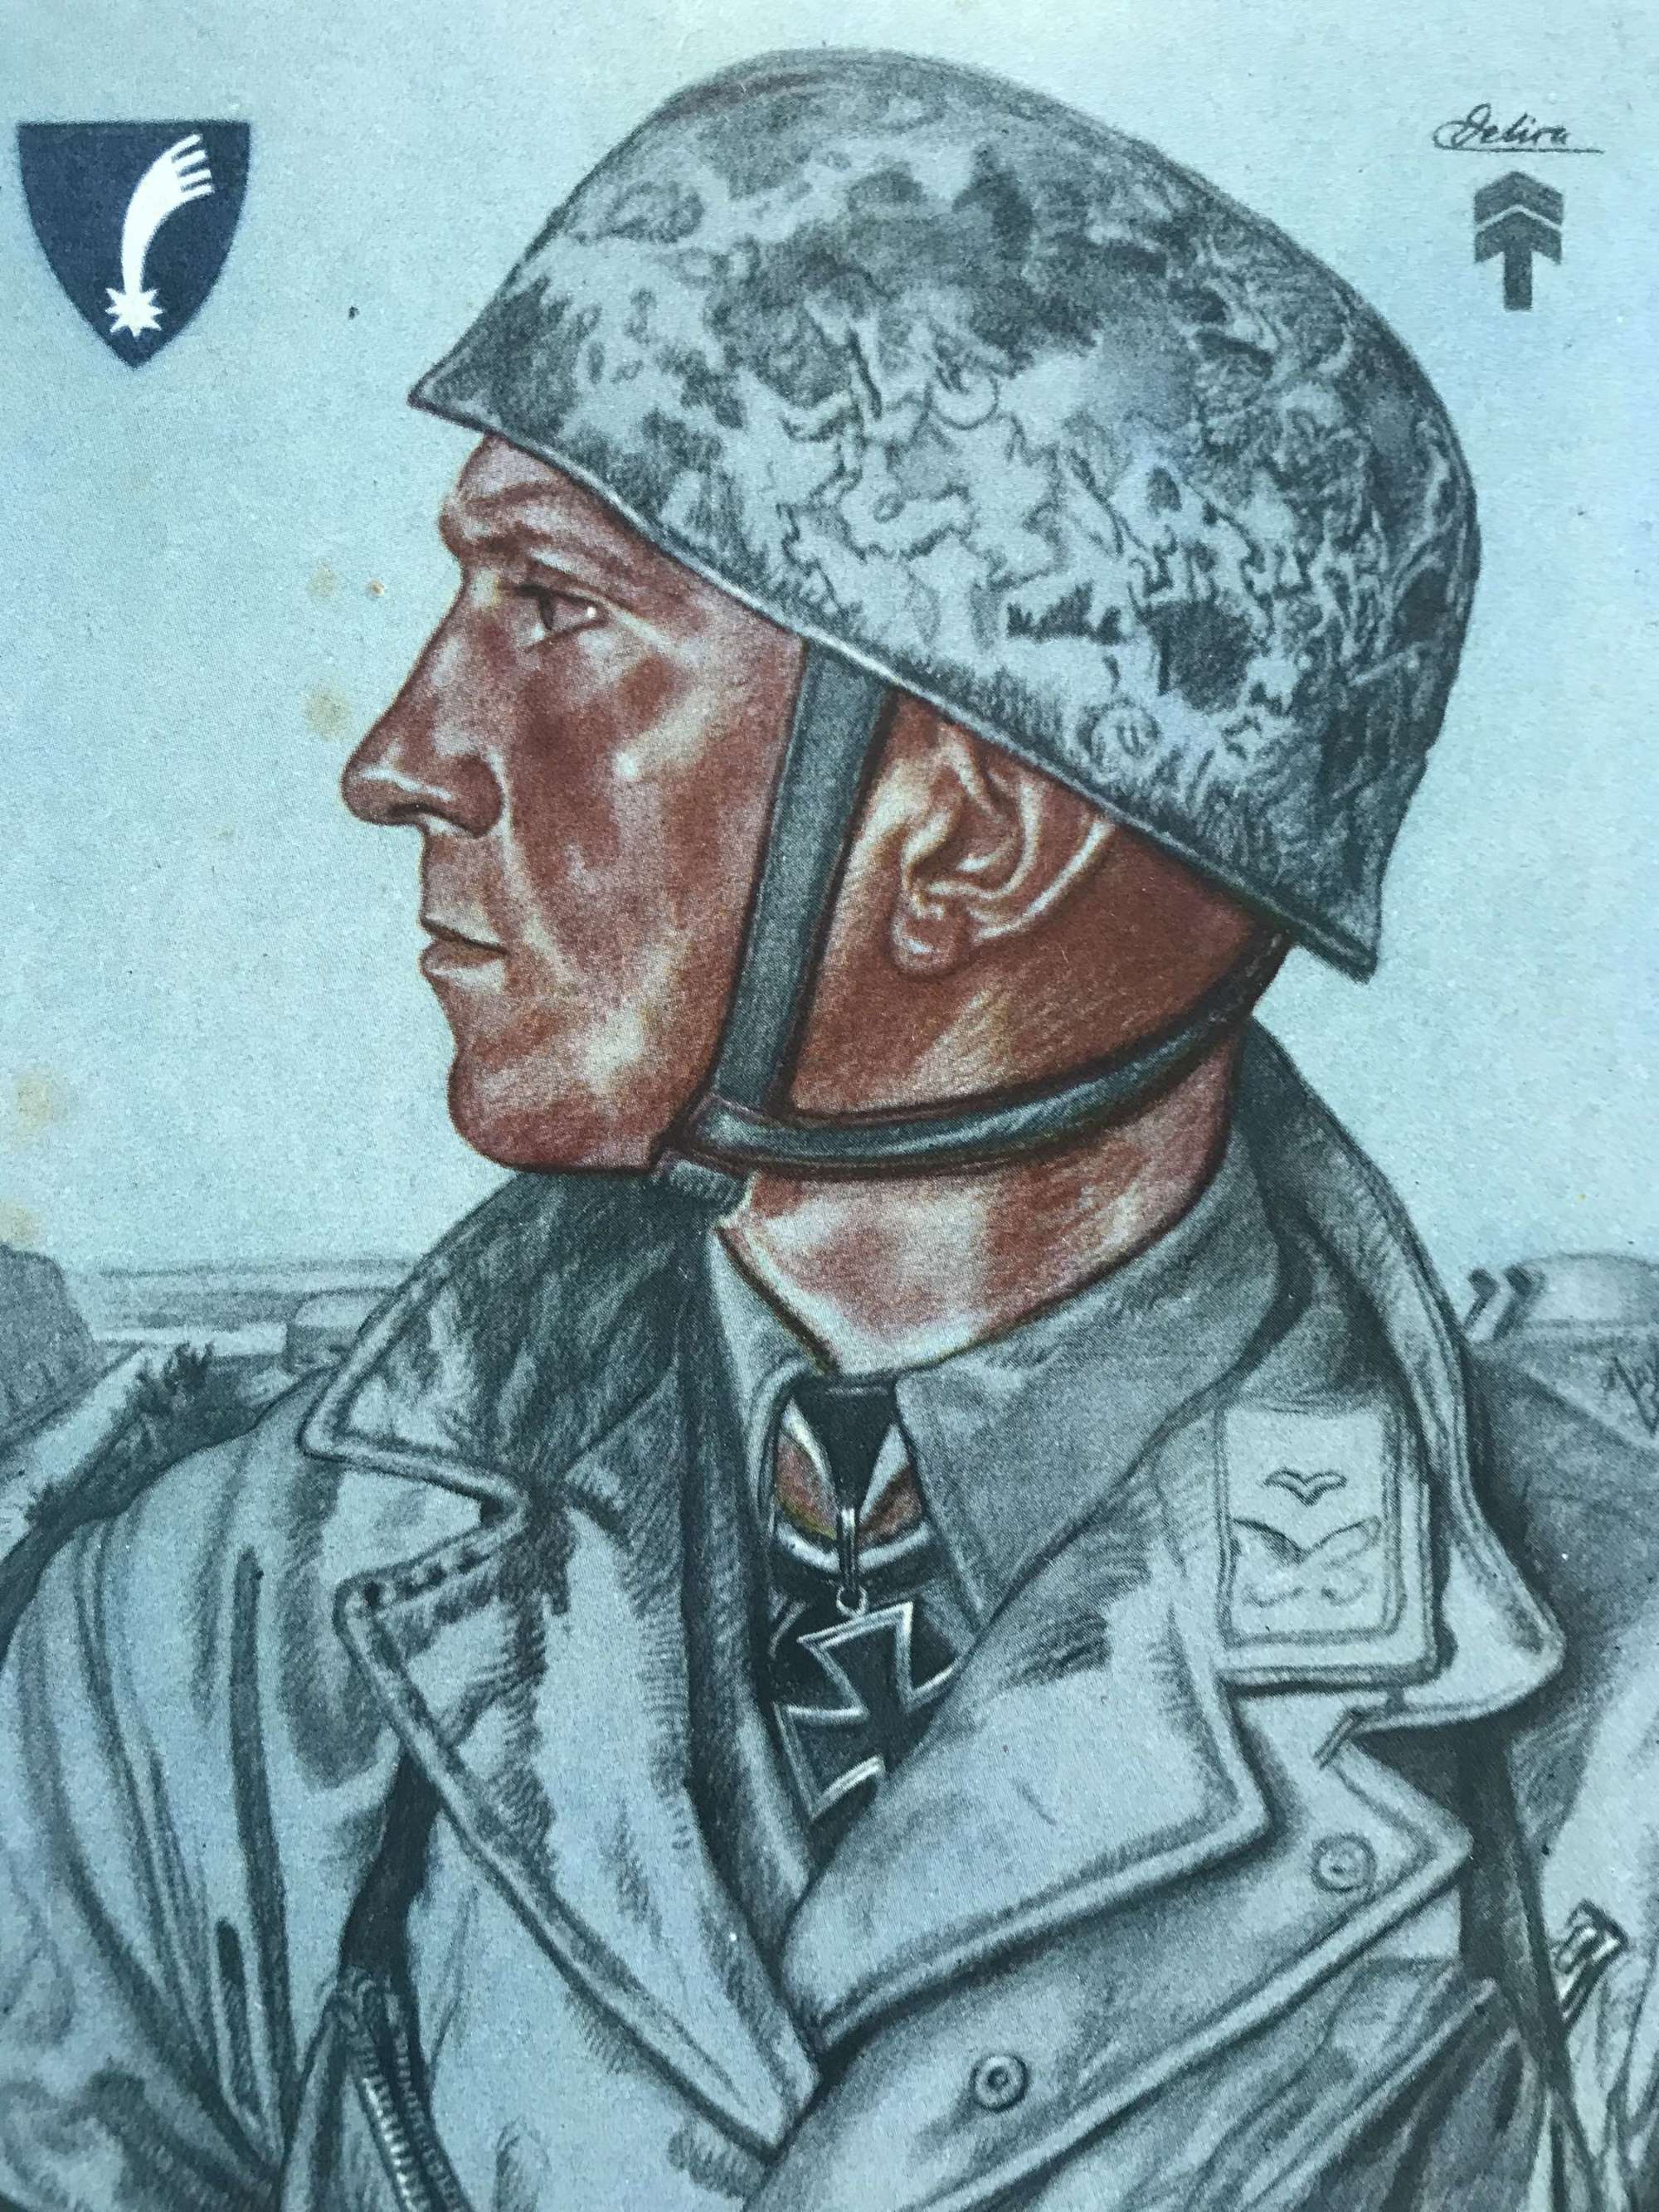 Hauptmann Delica Willrich postcard